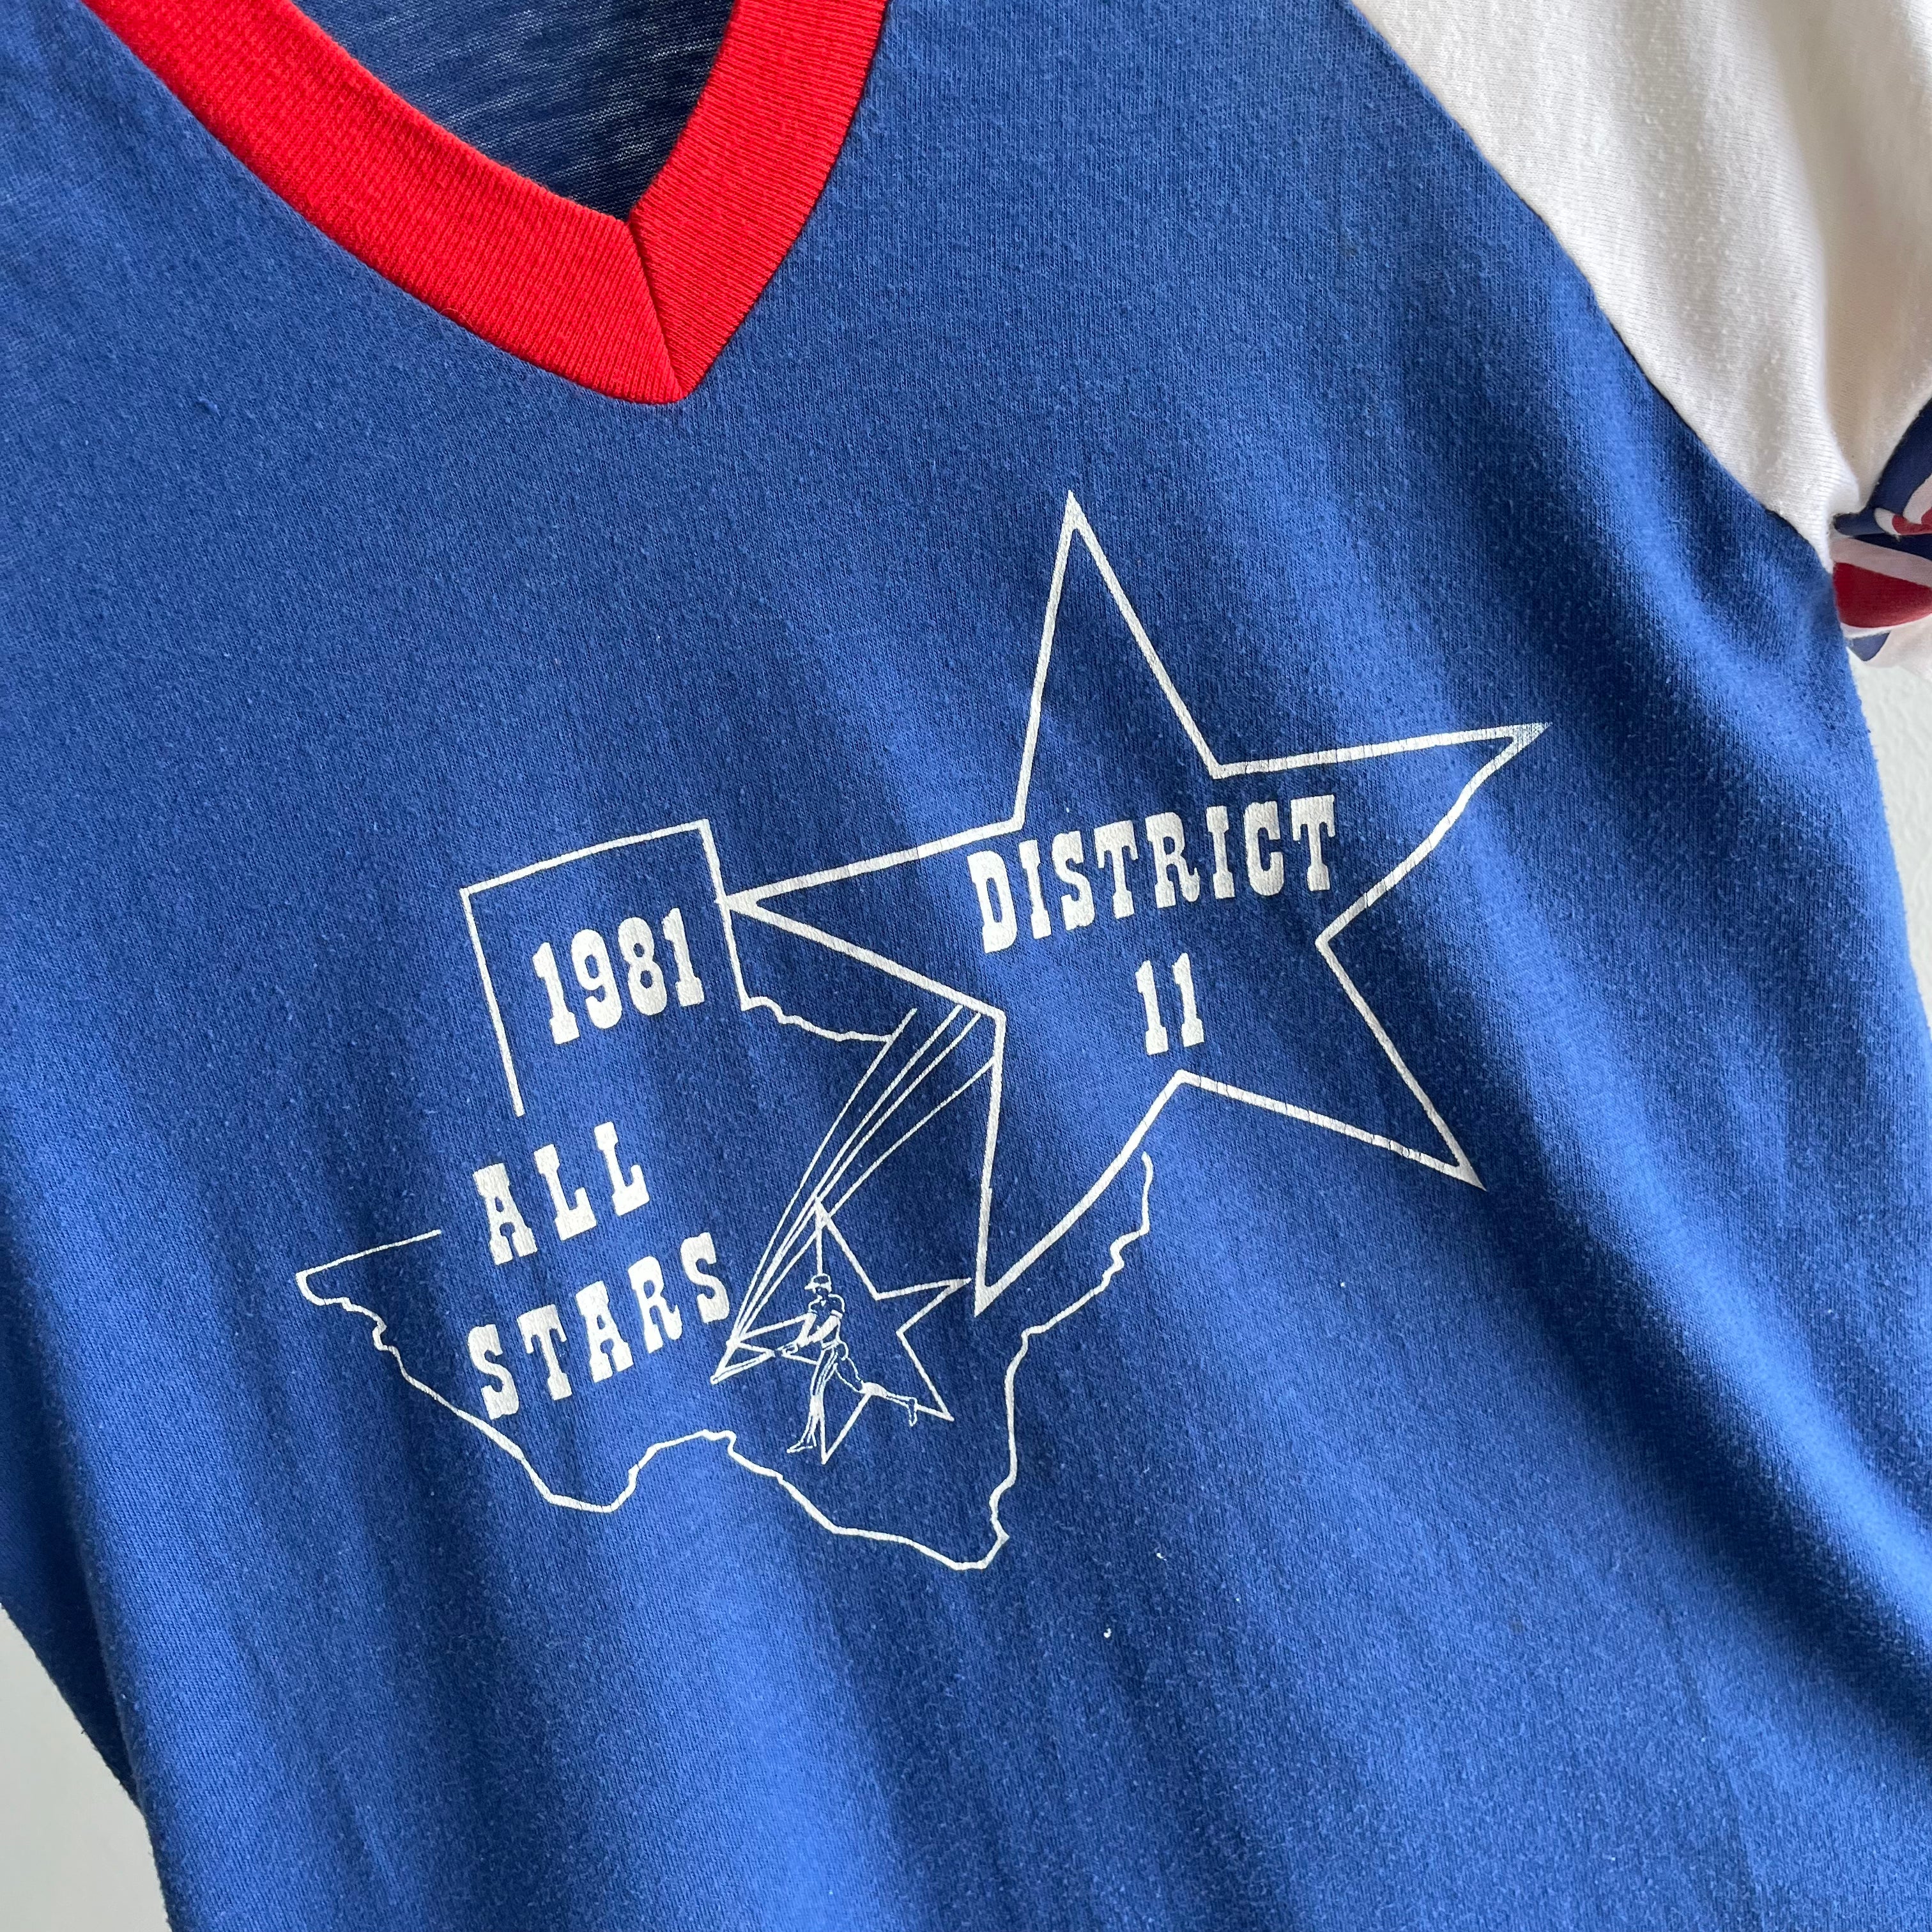 1981 District 11 All Stars V-Neck Baseball T-Shirt